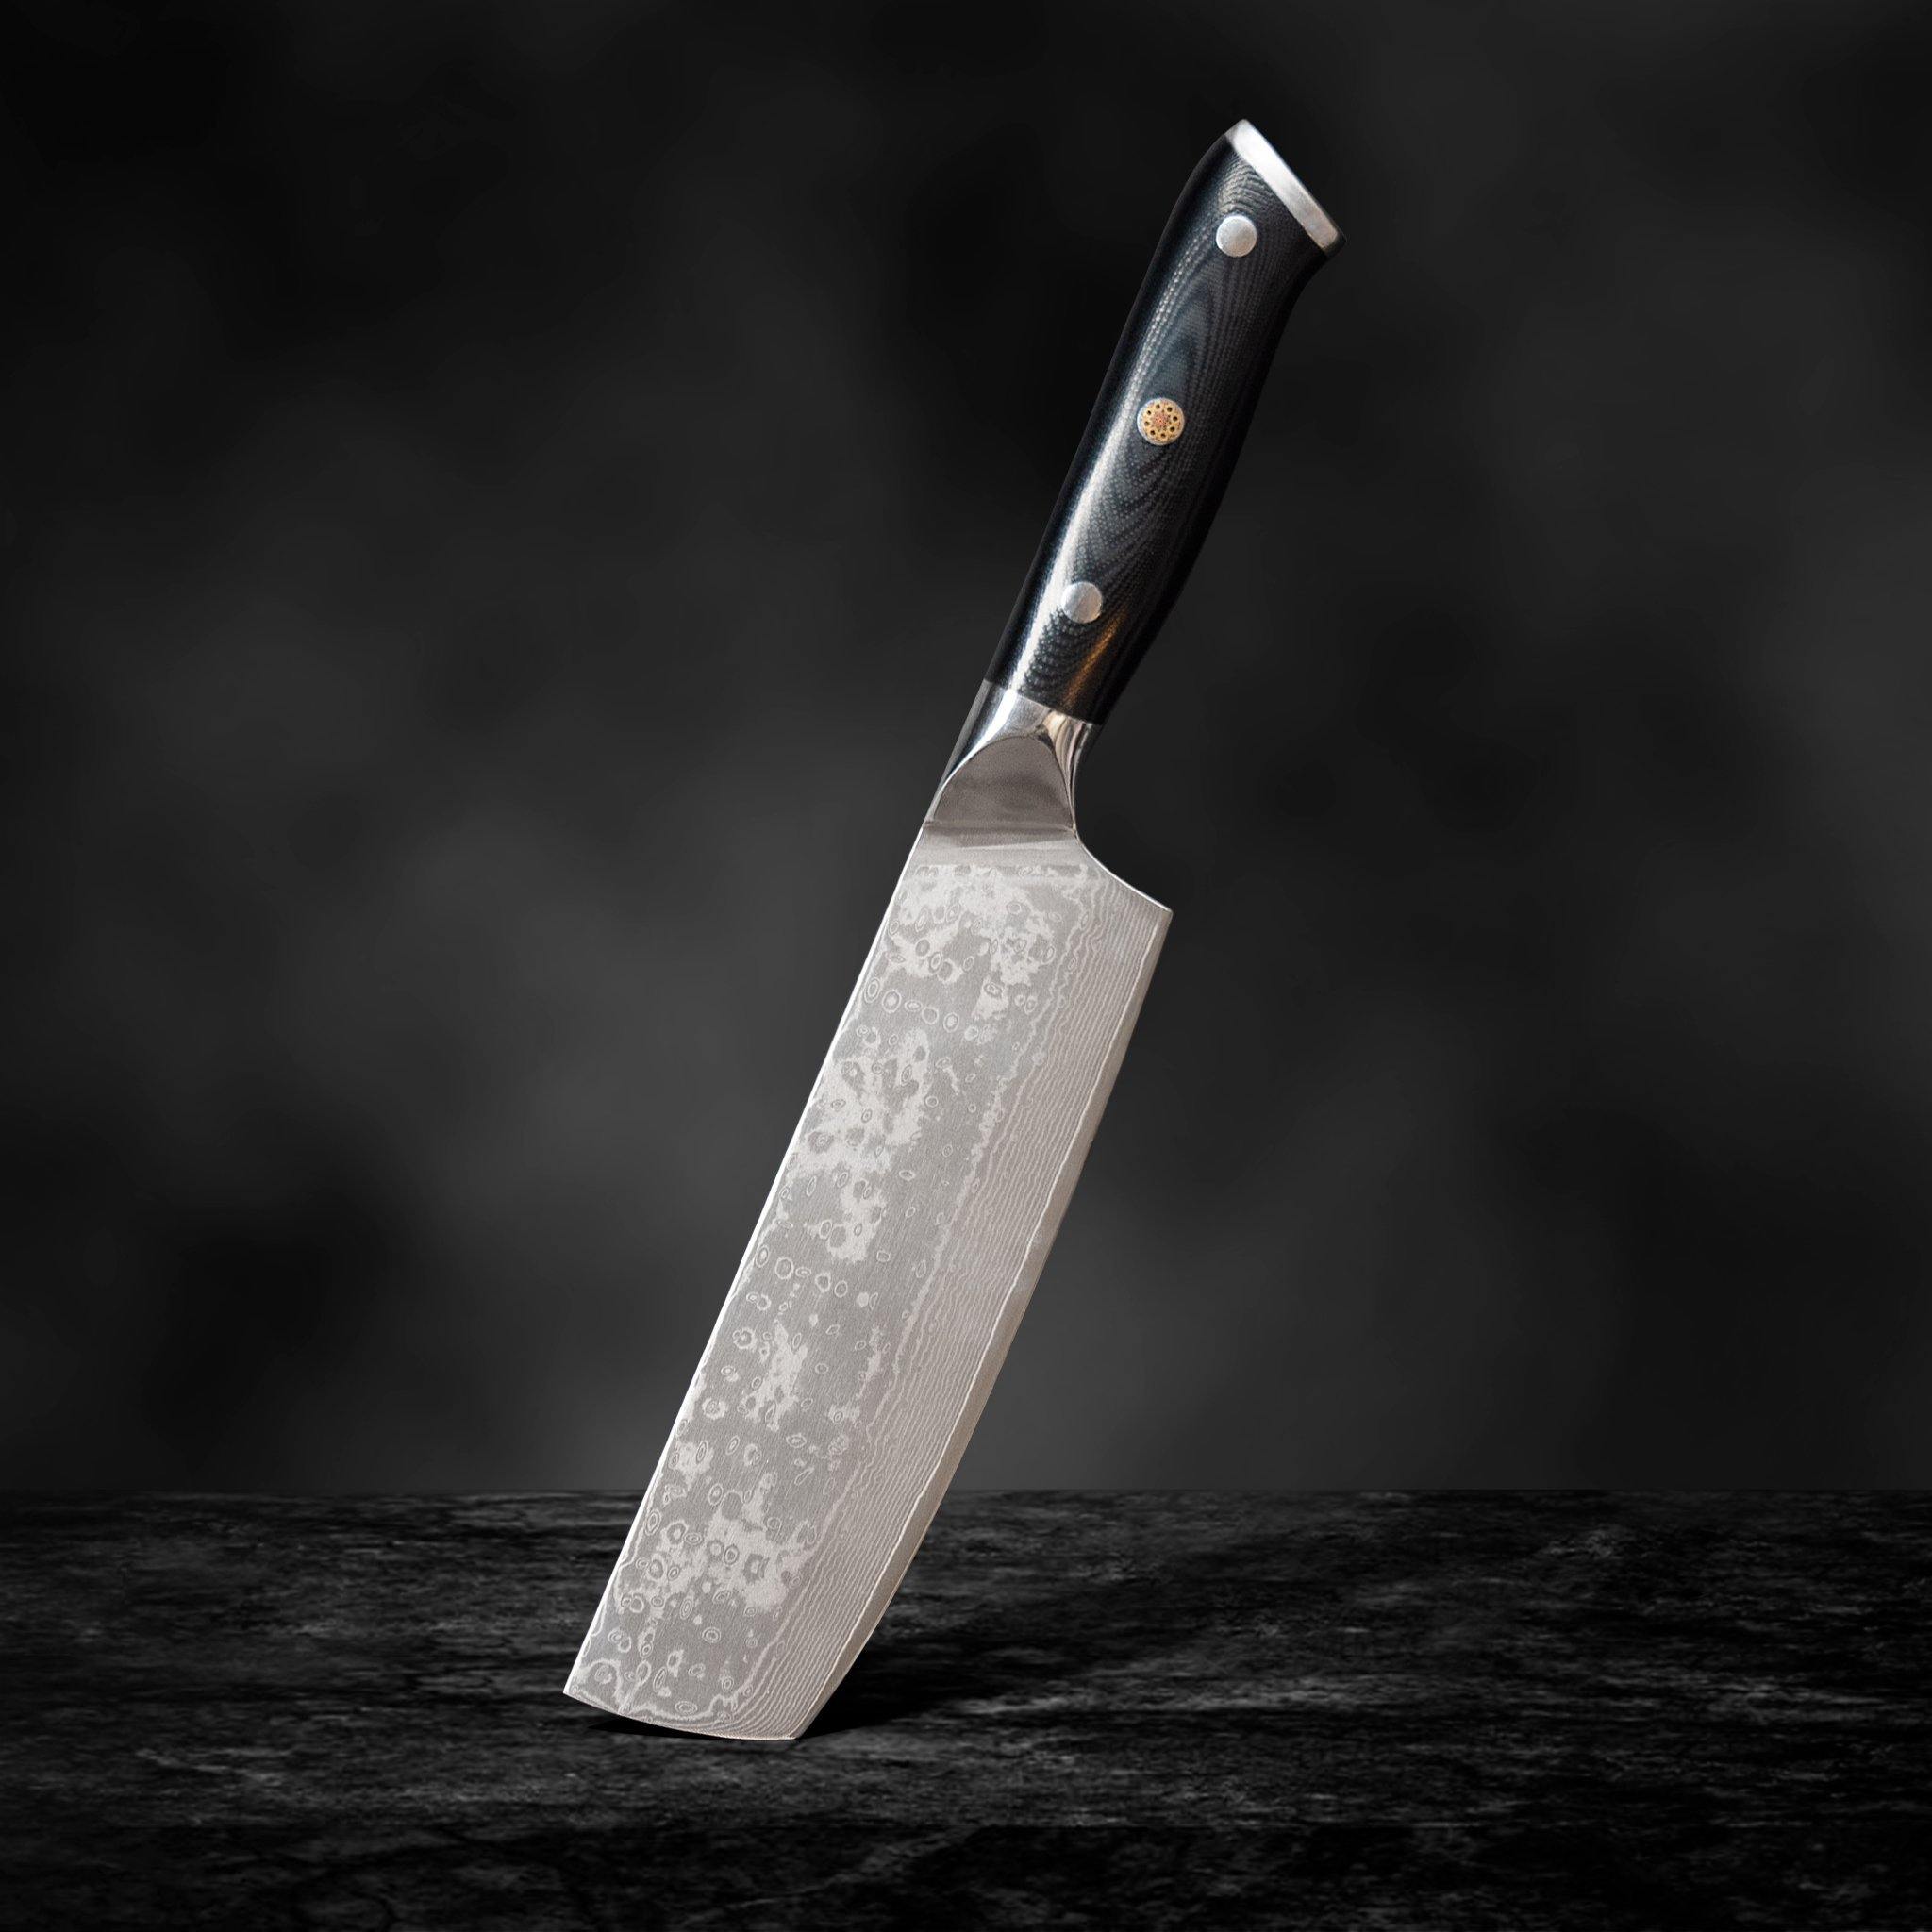 Dynasty Series Knives & Knife Set – Kanzen Knives